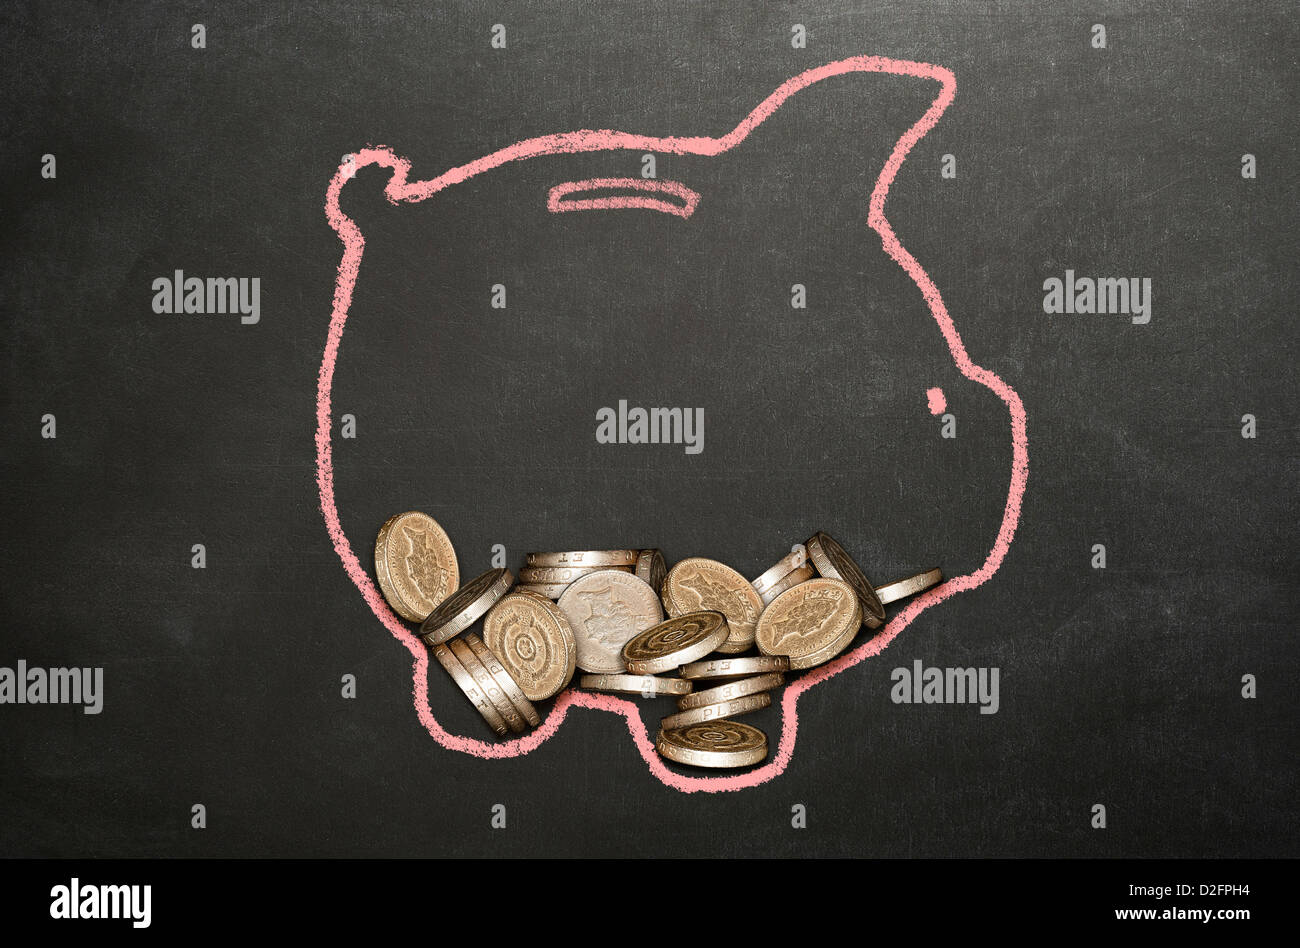 Dinero (Sterling) monedas en una alcancía dibujado en una pizarra Foto de stock